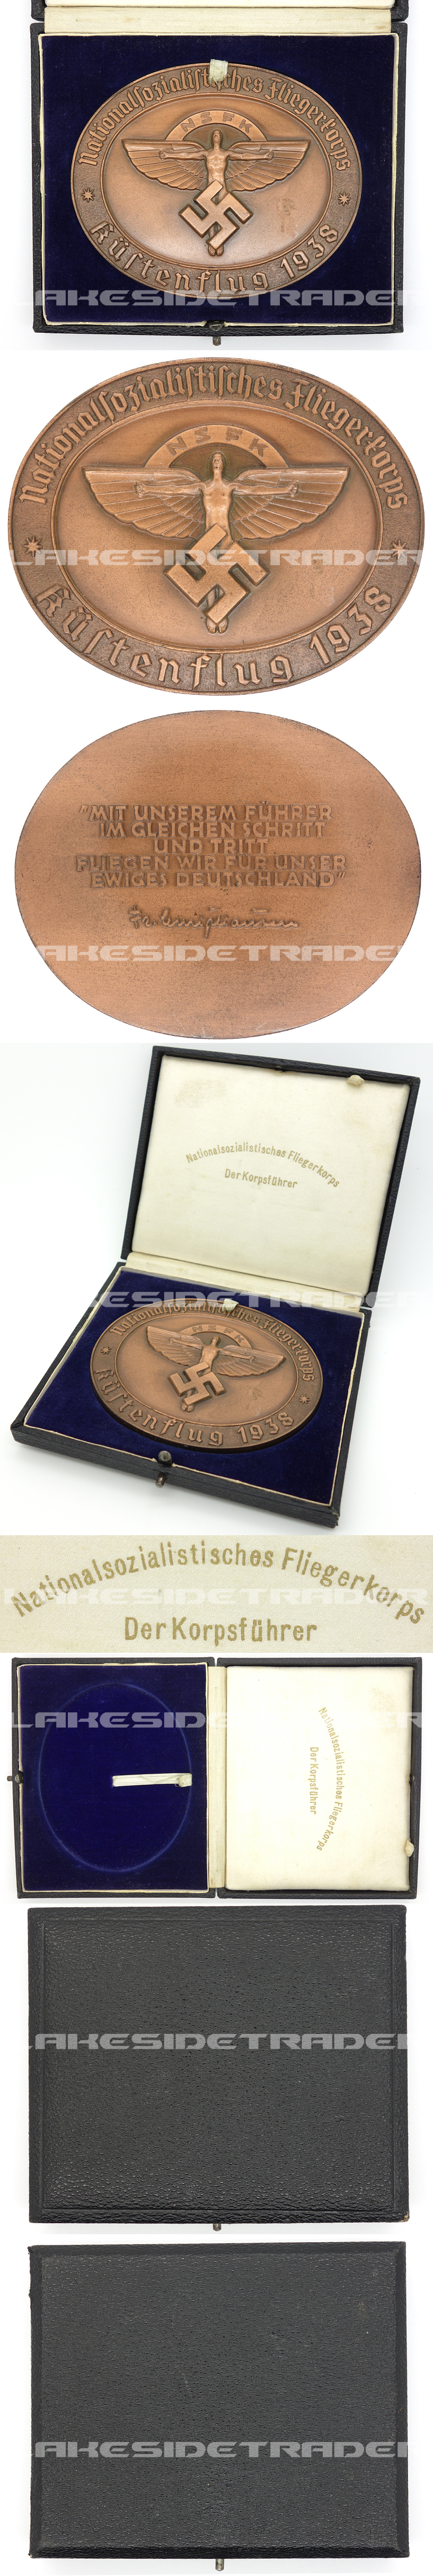 Cased NSFK Deutschlandflug Award Medallion in Bronze 1938